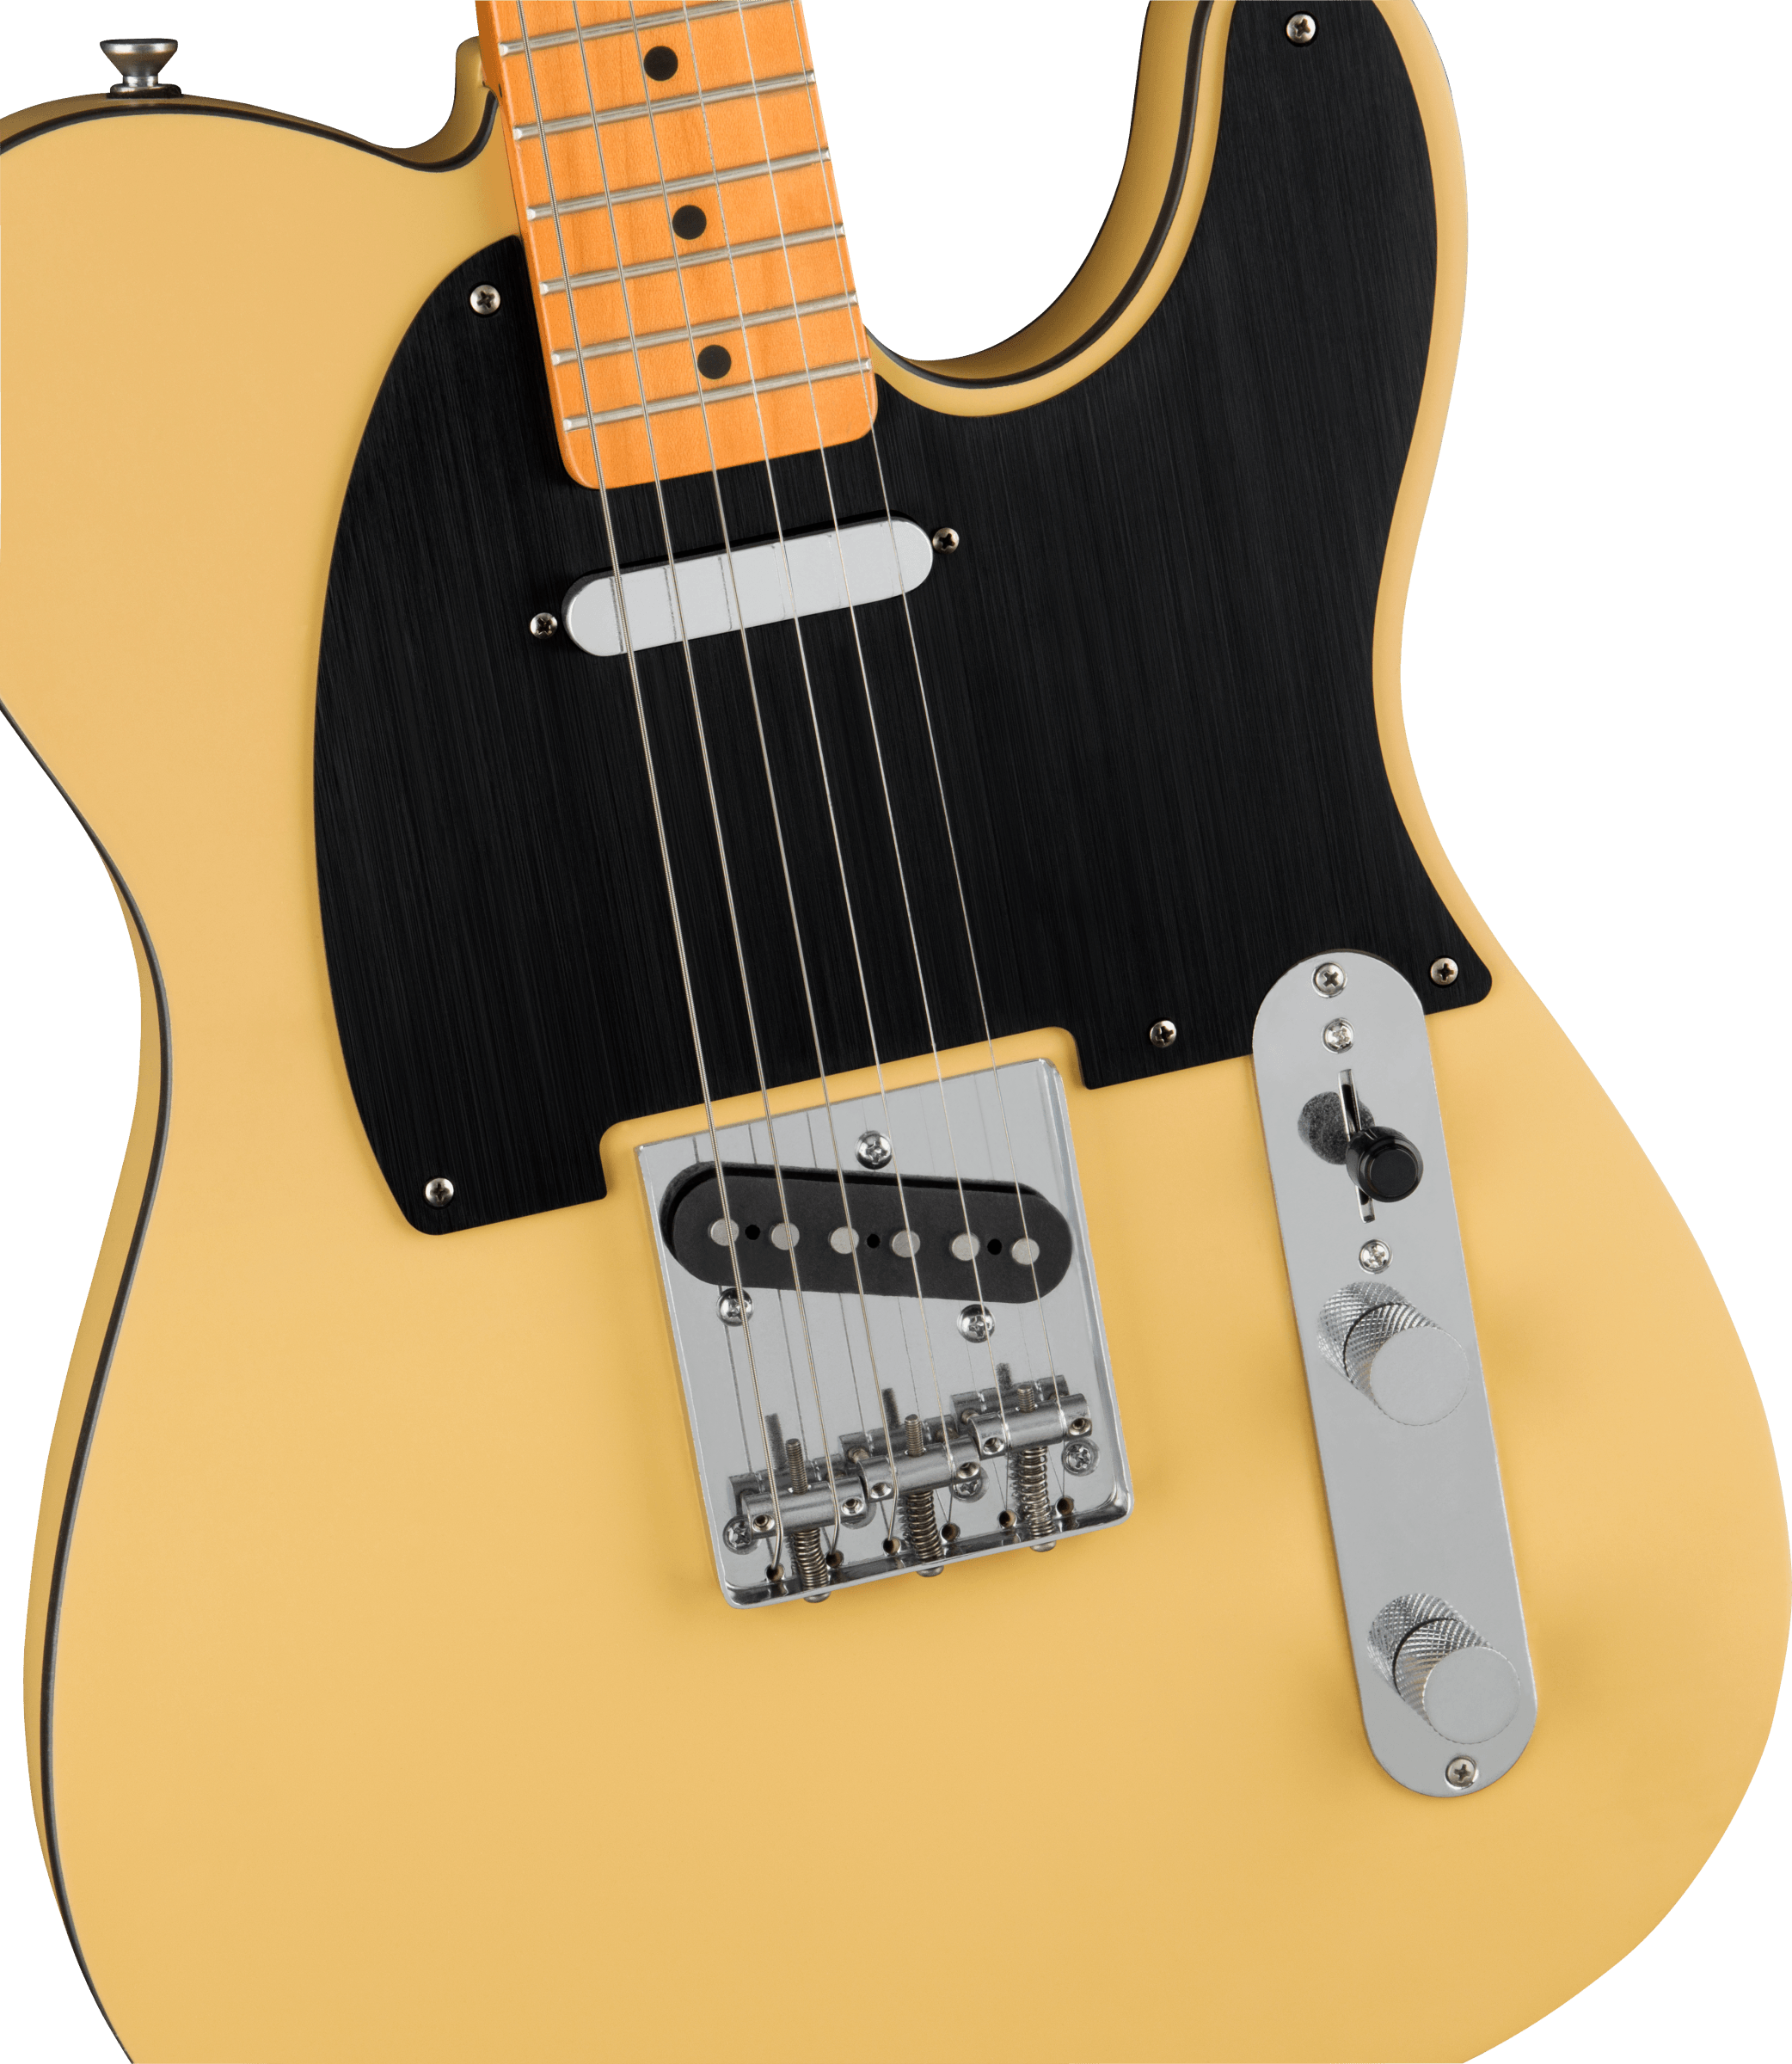 Squier Tele 40th Anniversary Vintage Edition Mn - Satin Vintage Blonde - Guitarra eléctrica con forma de tel - Variation 2